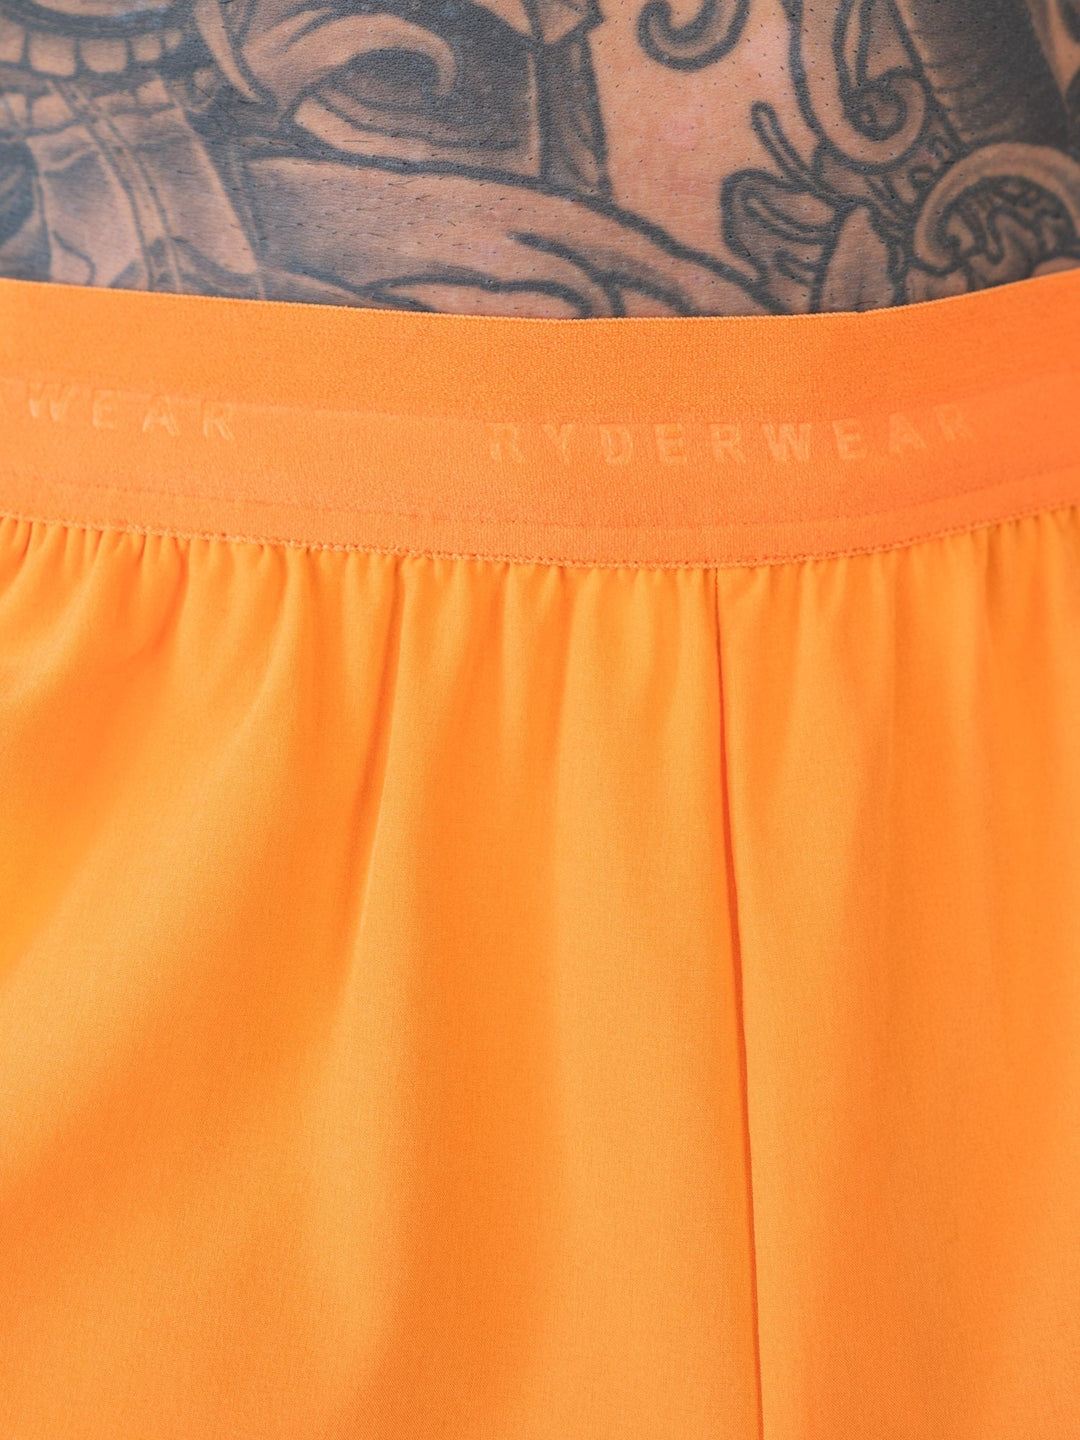 Training Shorts - Orange Clothing Ryderwear 